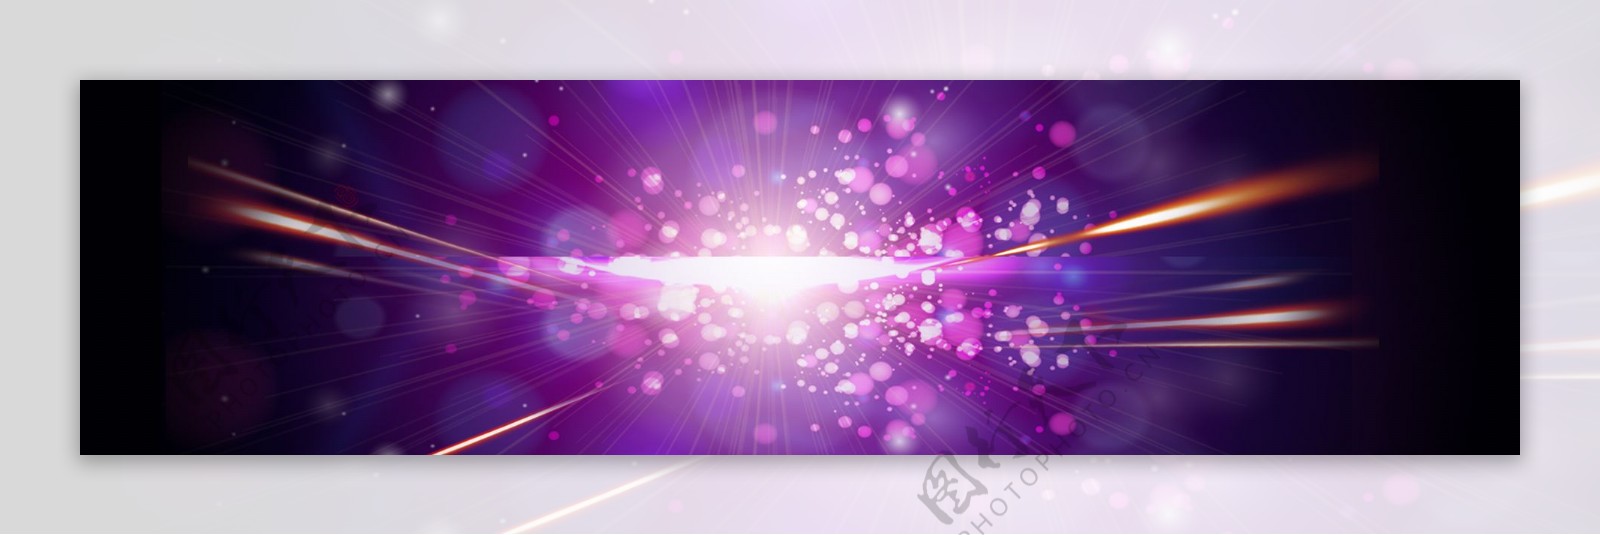 梦幻紫色banner背景